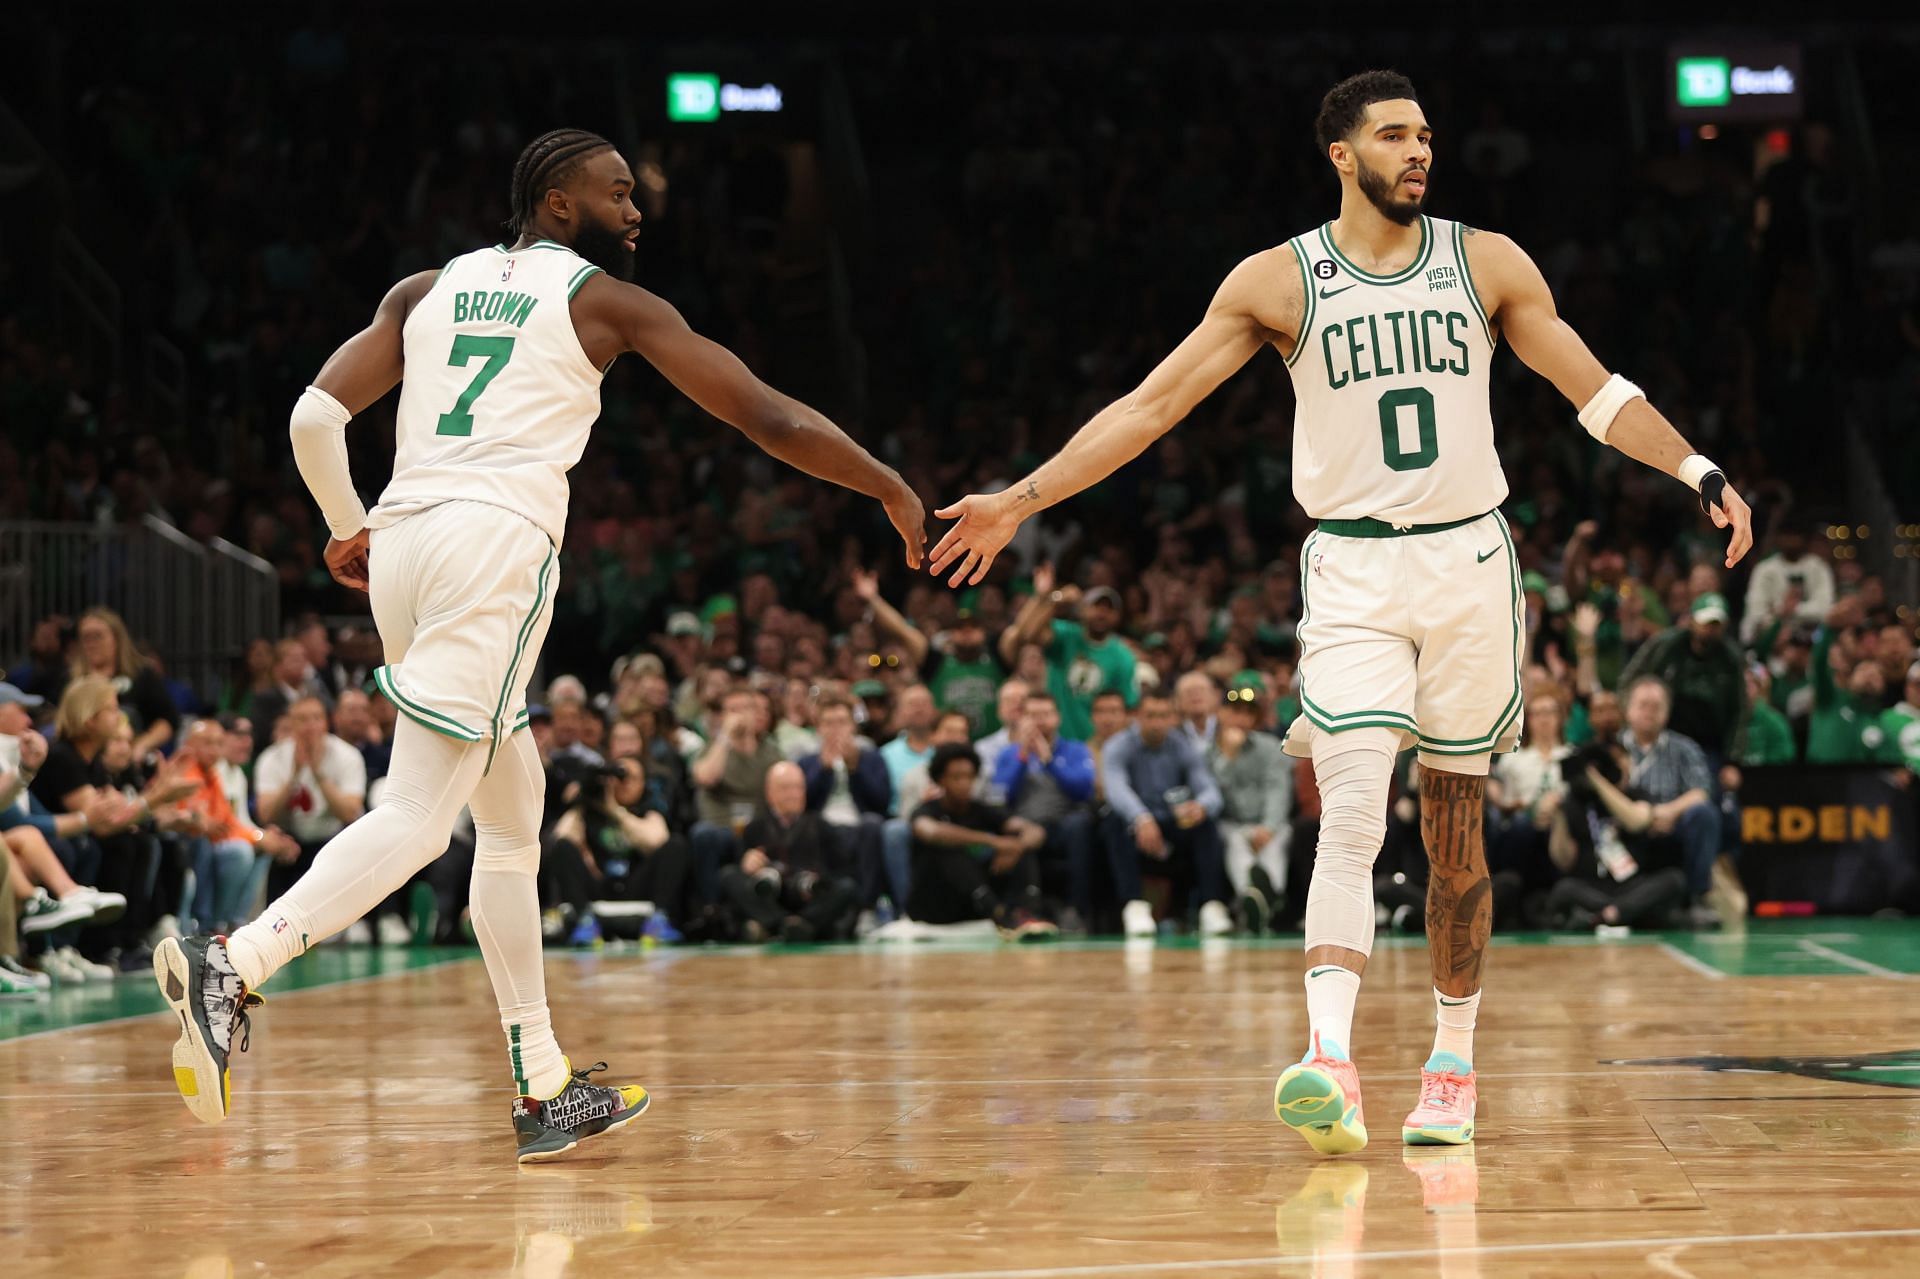 Boston Celtics stars Jaylen Brown and Jayson Tatum